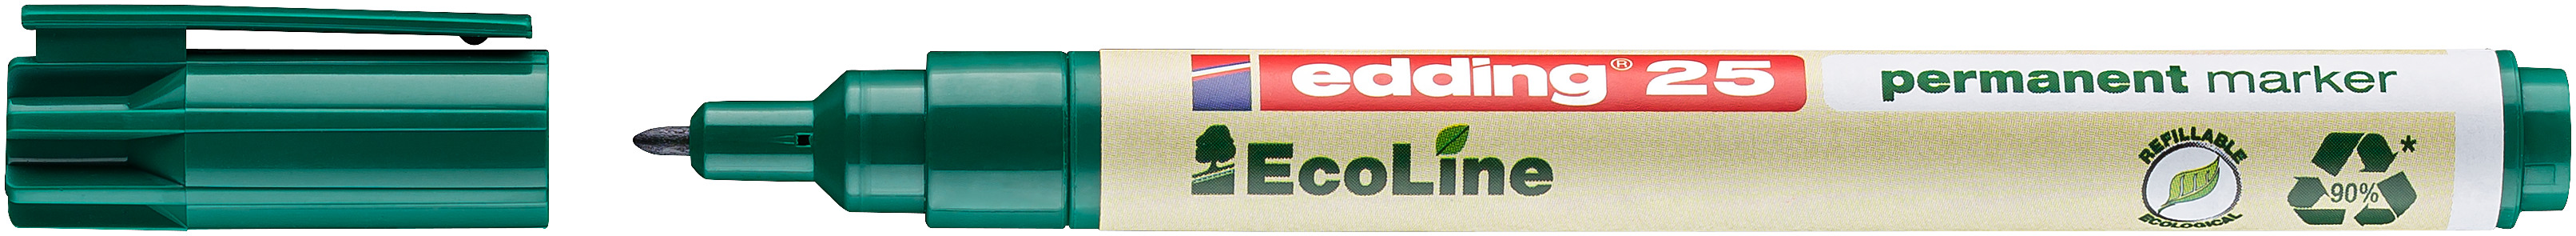 EDDING Permanent Marker 25 EcoLIne 25-4 vert